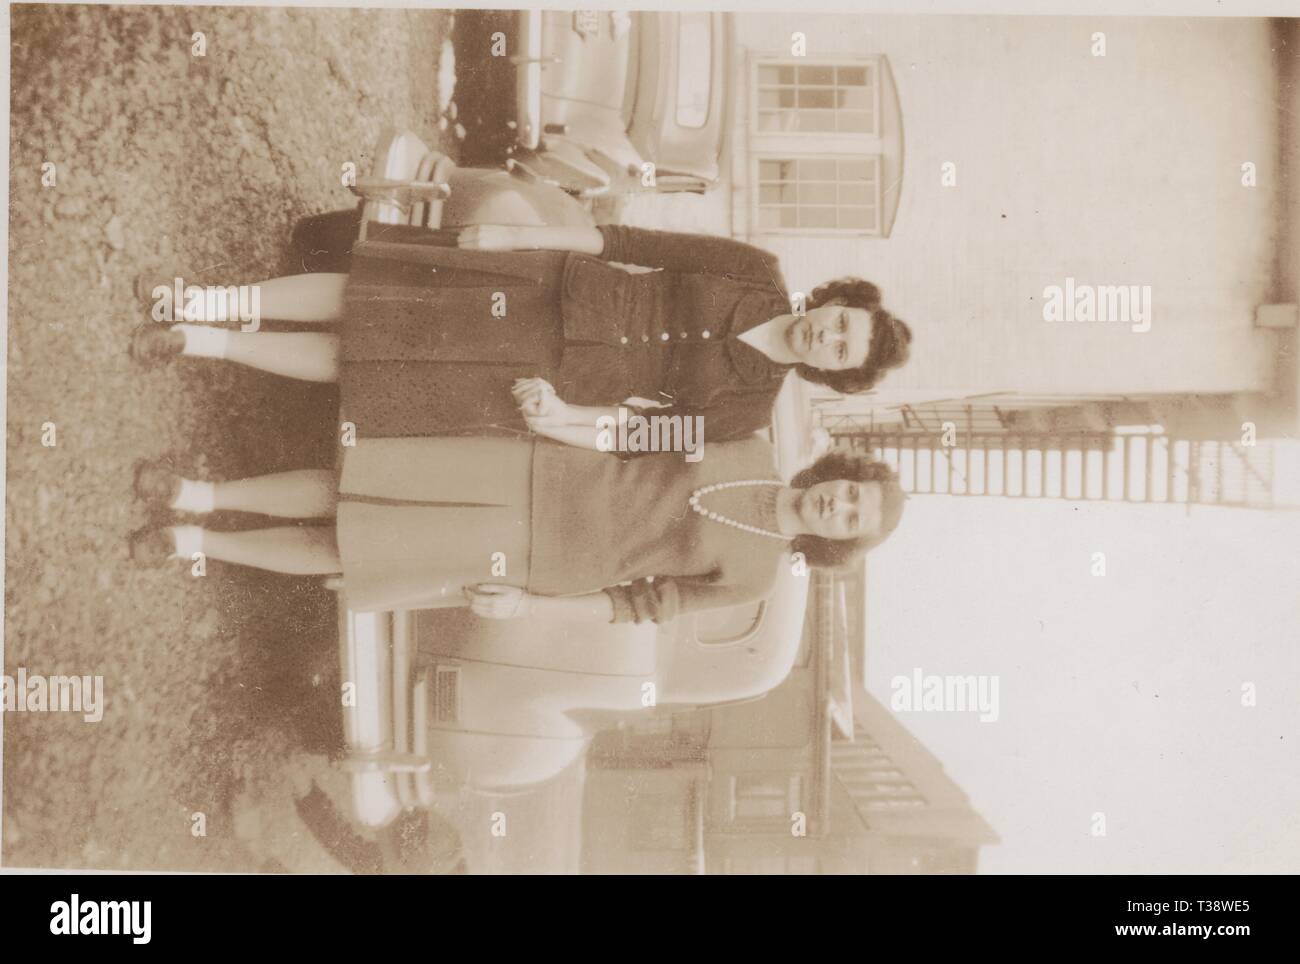 Due dipendenti della più grande forza lavoro a Knoxville, in Tennessee metà secolo - Brookside Mills, un produttore di tessili che impiegano oltre 1200. Etta Teague è identificato sulla destra. Foto Stock